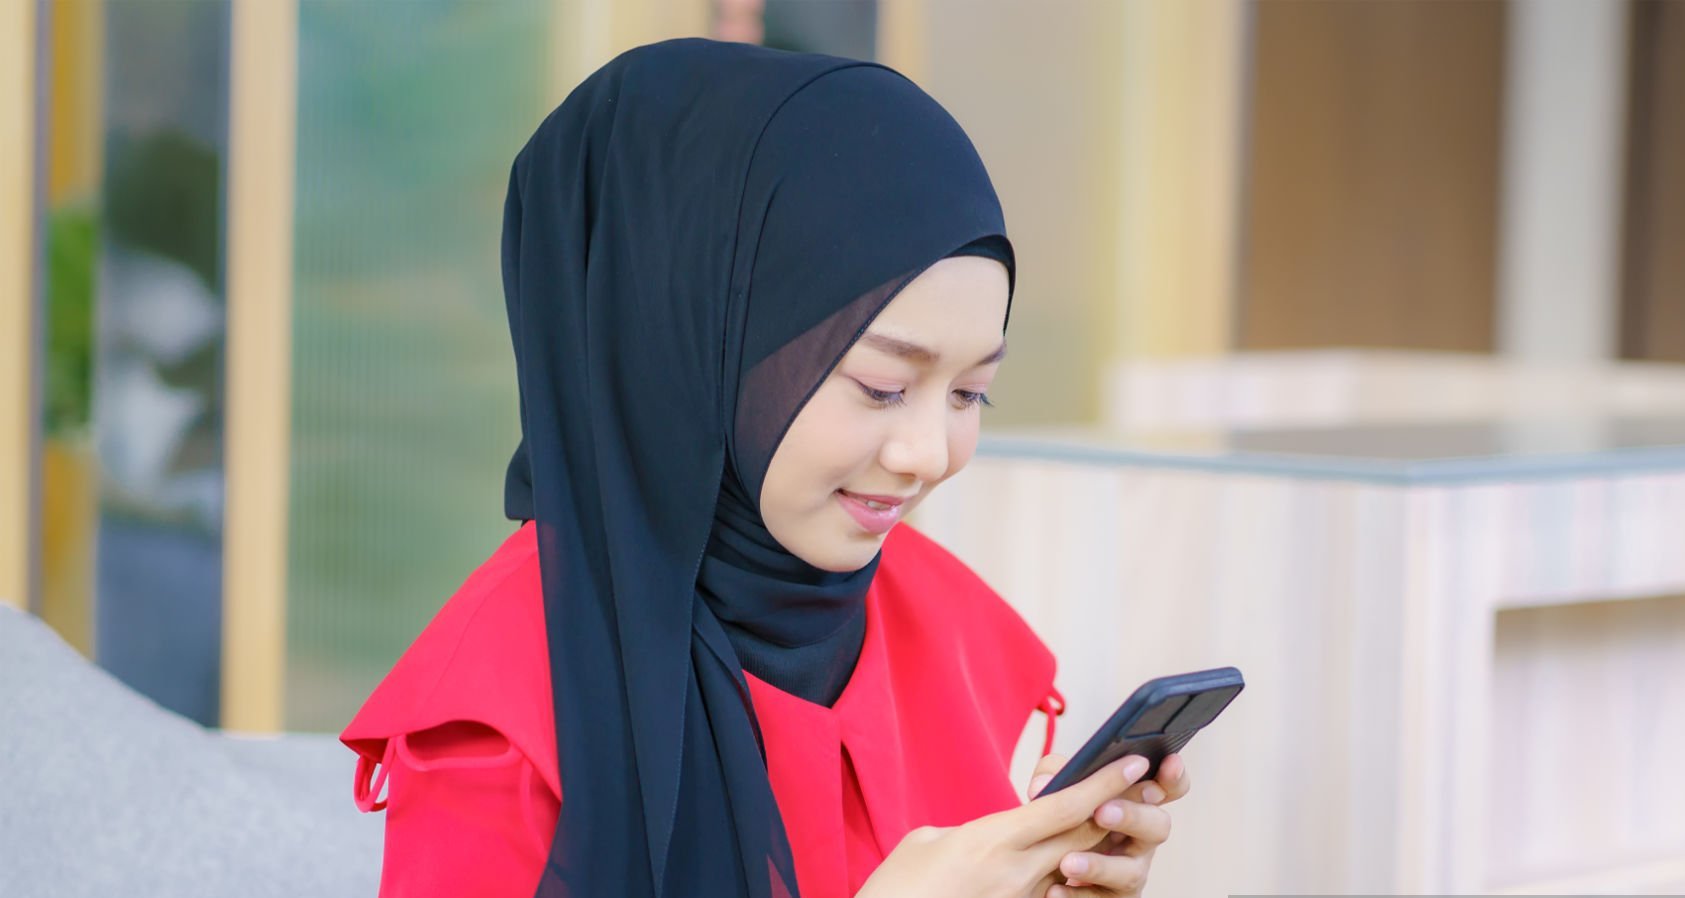 خوبصورت نوجوان باحجاب مسلمان خاتون موبائل فون استعمال کرتے ہوئے